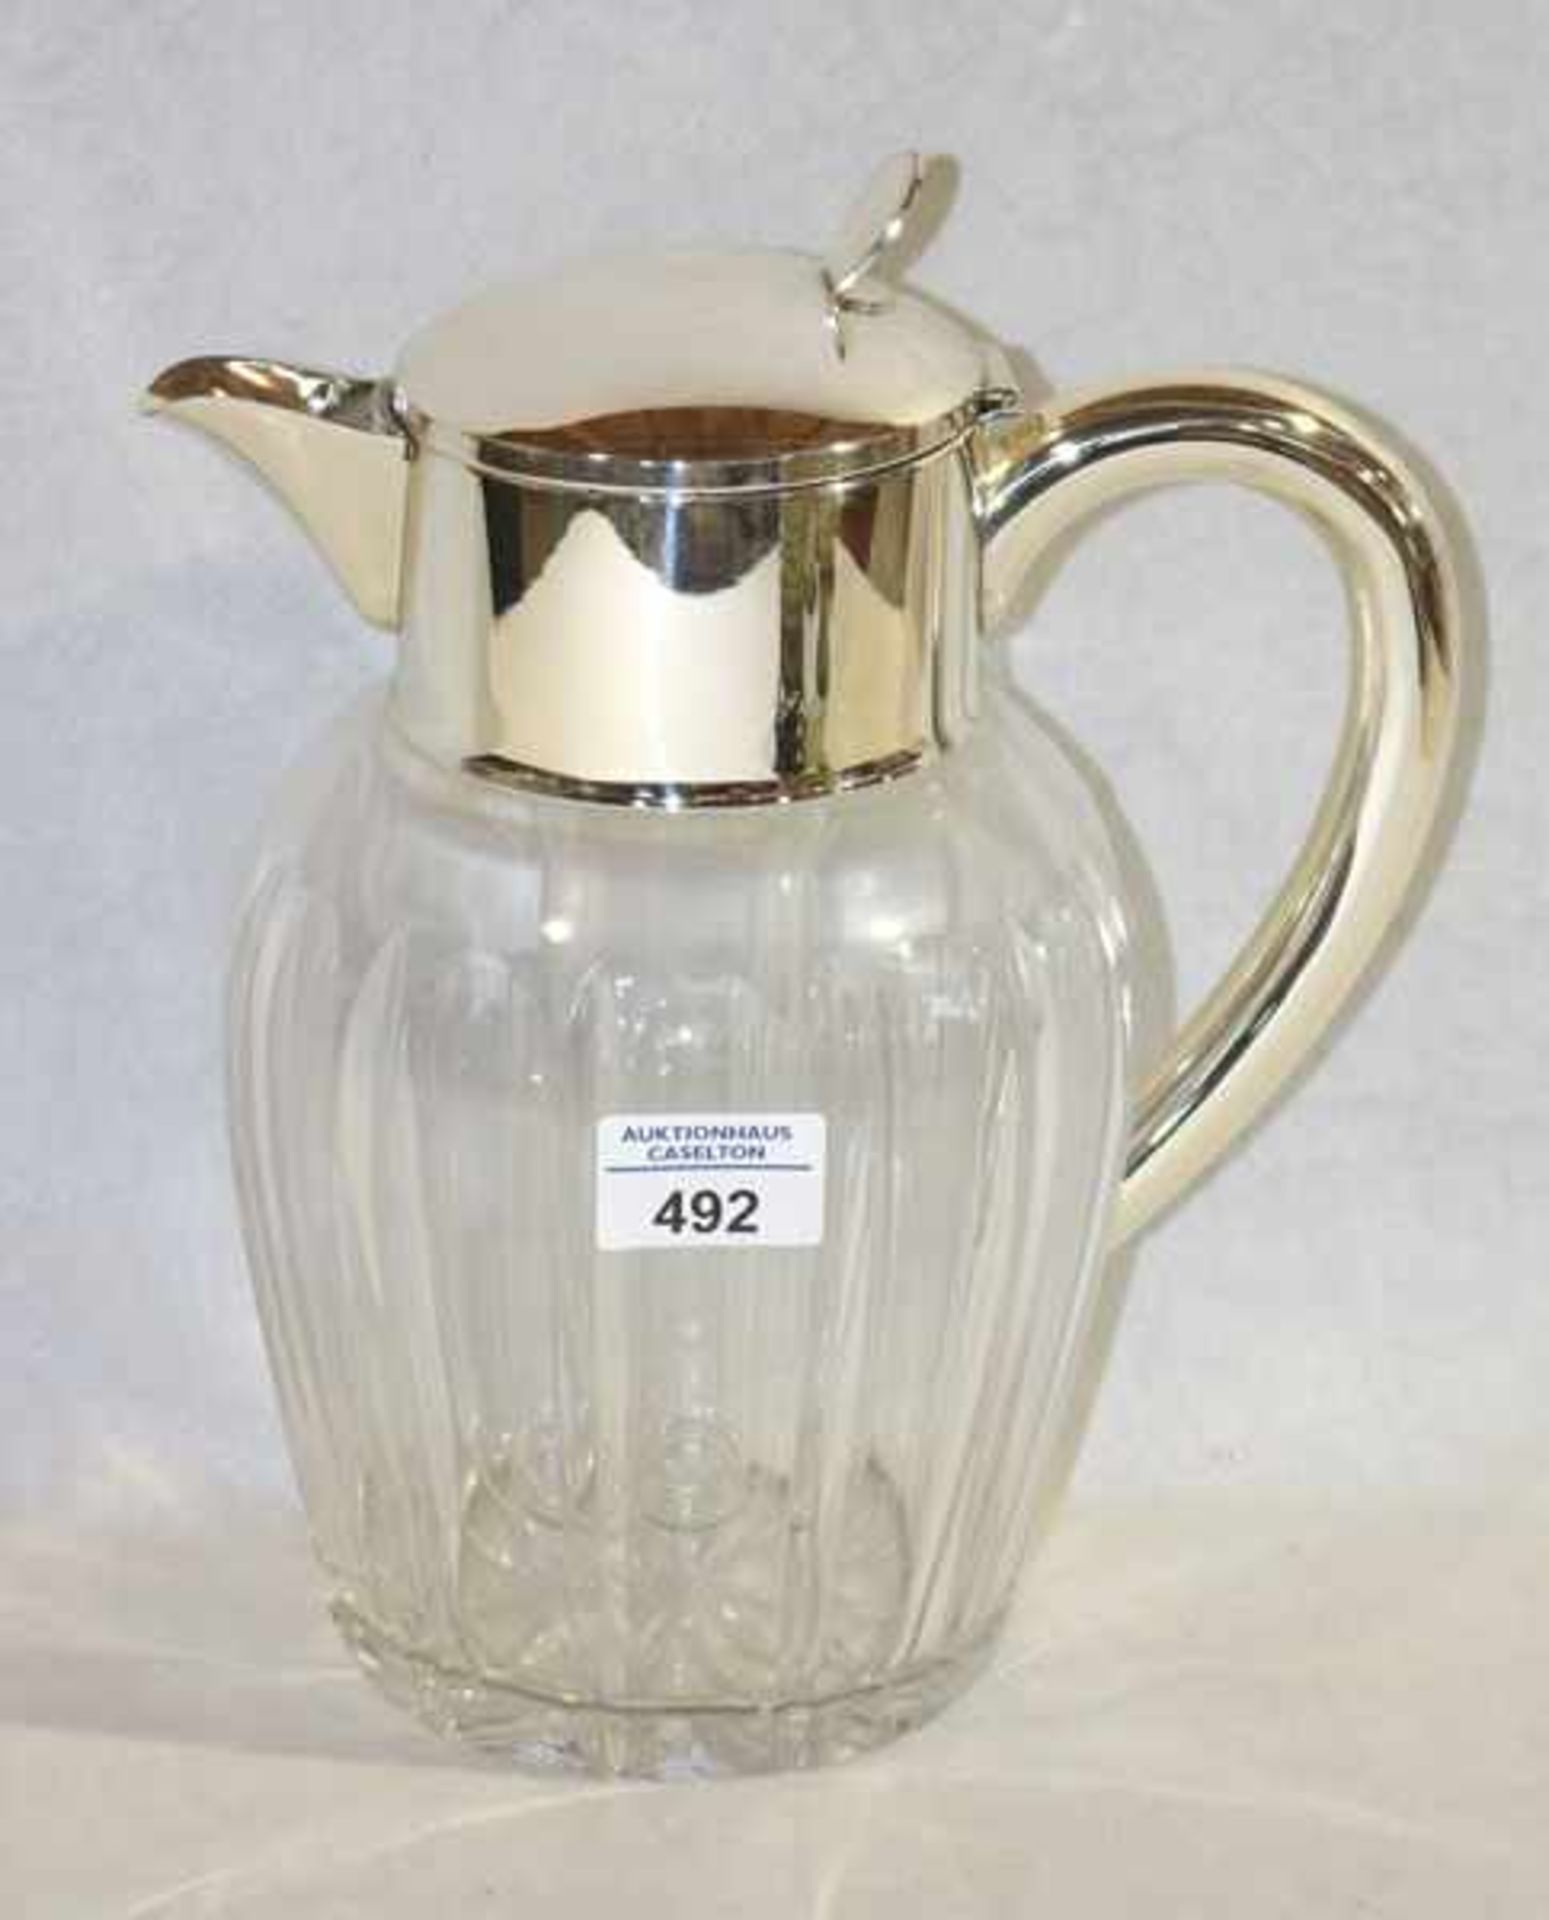 Kalter Ente Krug mit Glaseinsatz und Metall Montierung, H 27 cm, D 19 cm, Gebrauchsspuren